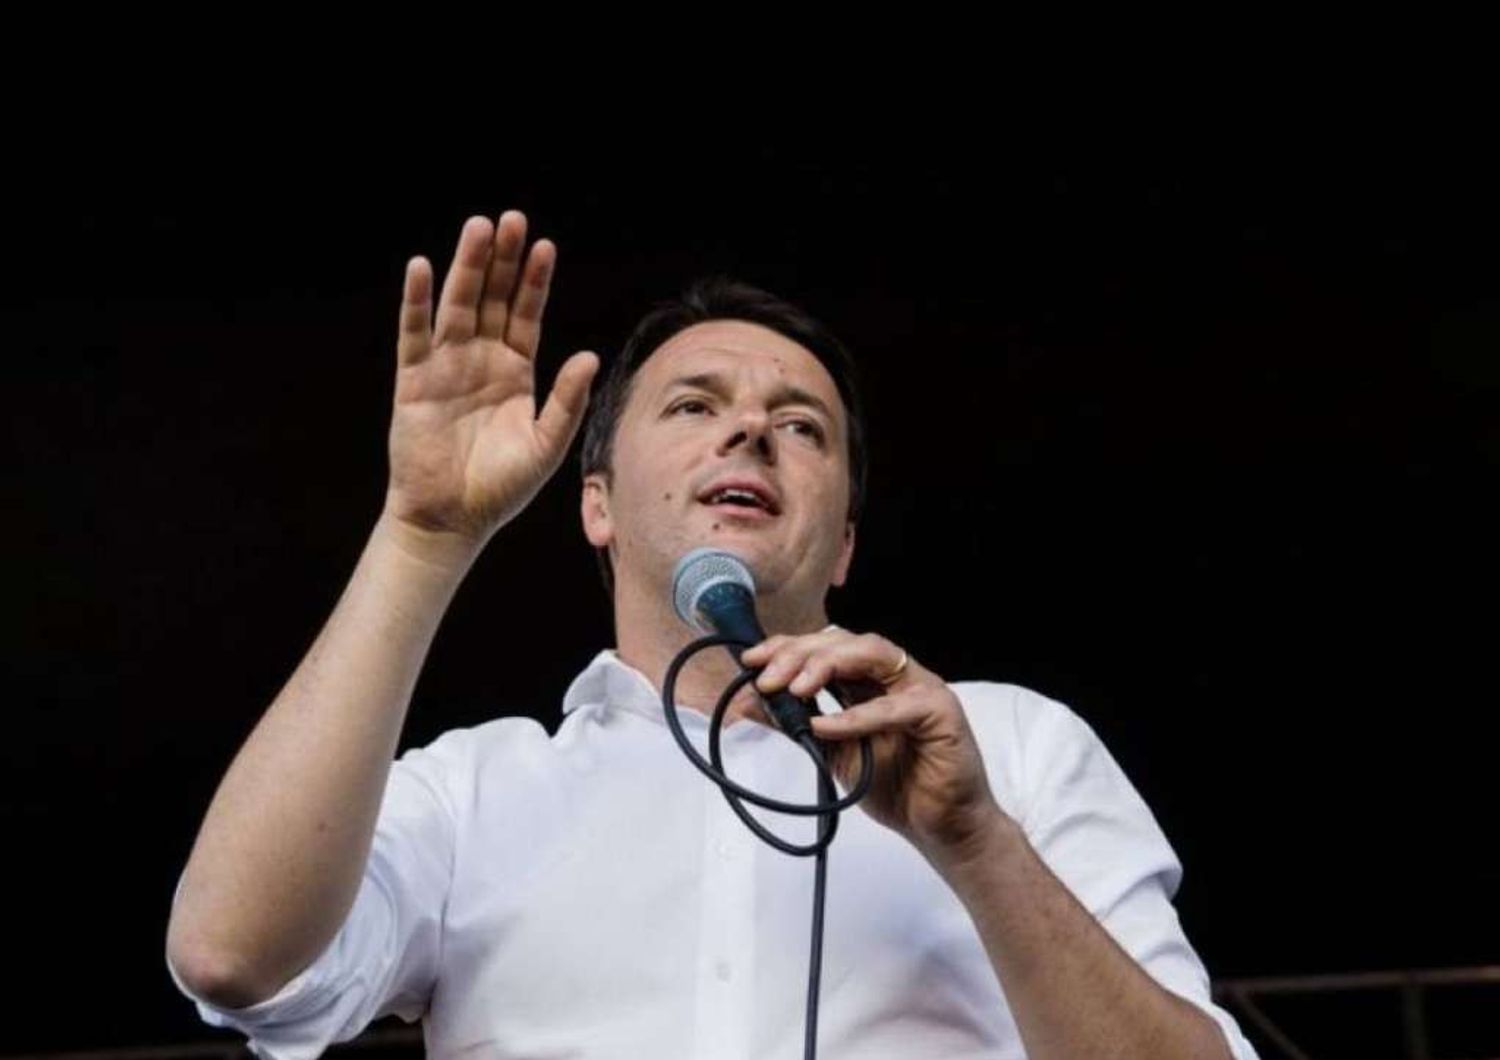 Lavoro: Renzi, "Non e' tempo di compromessi, Italia deve cambiare"